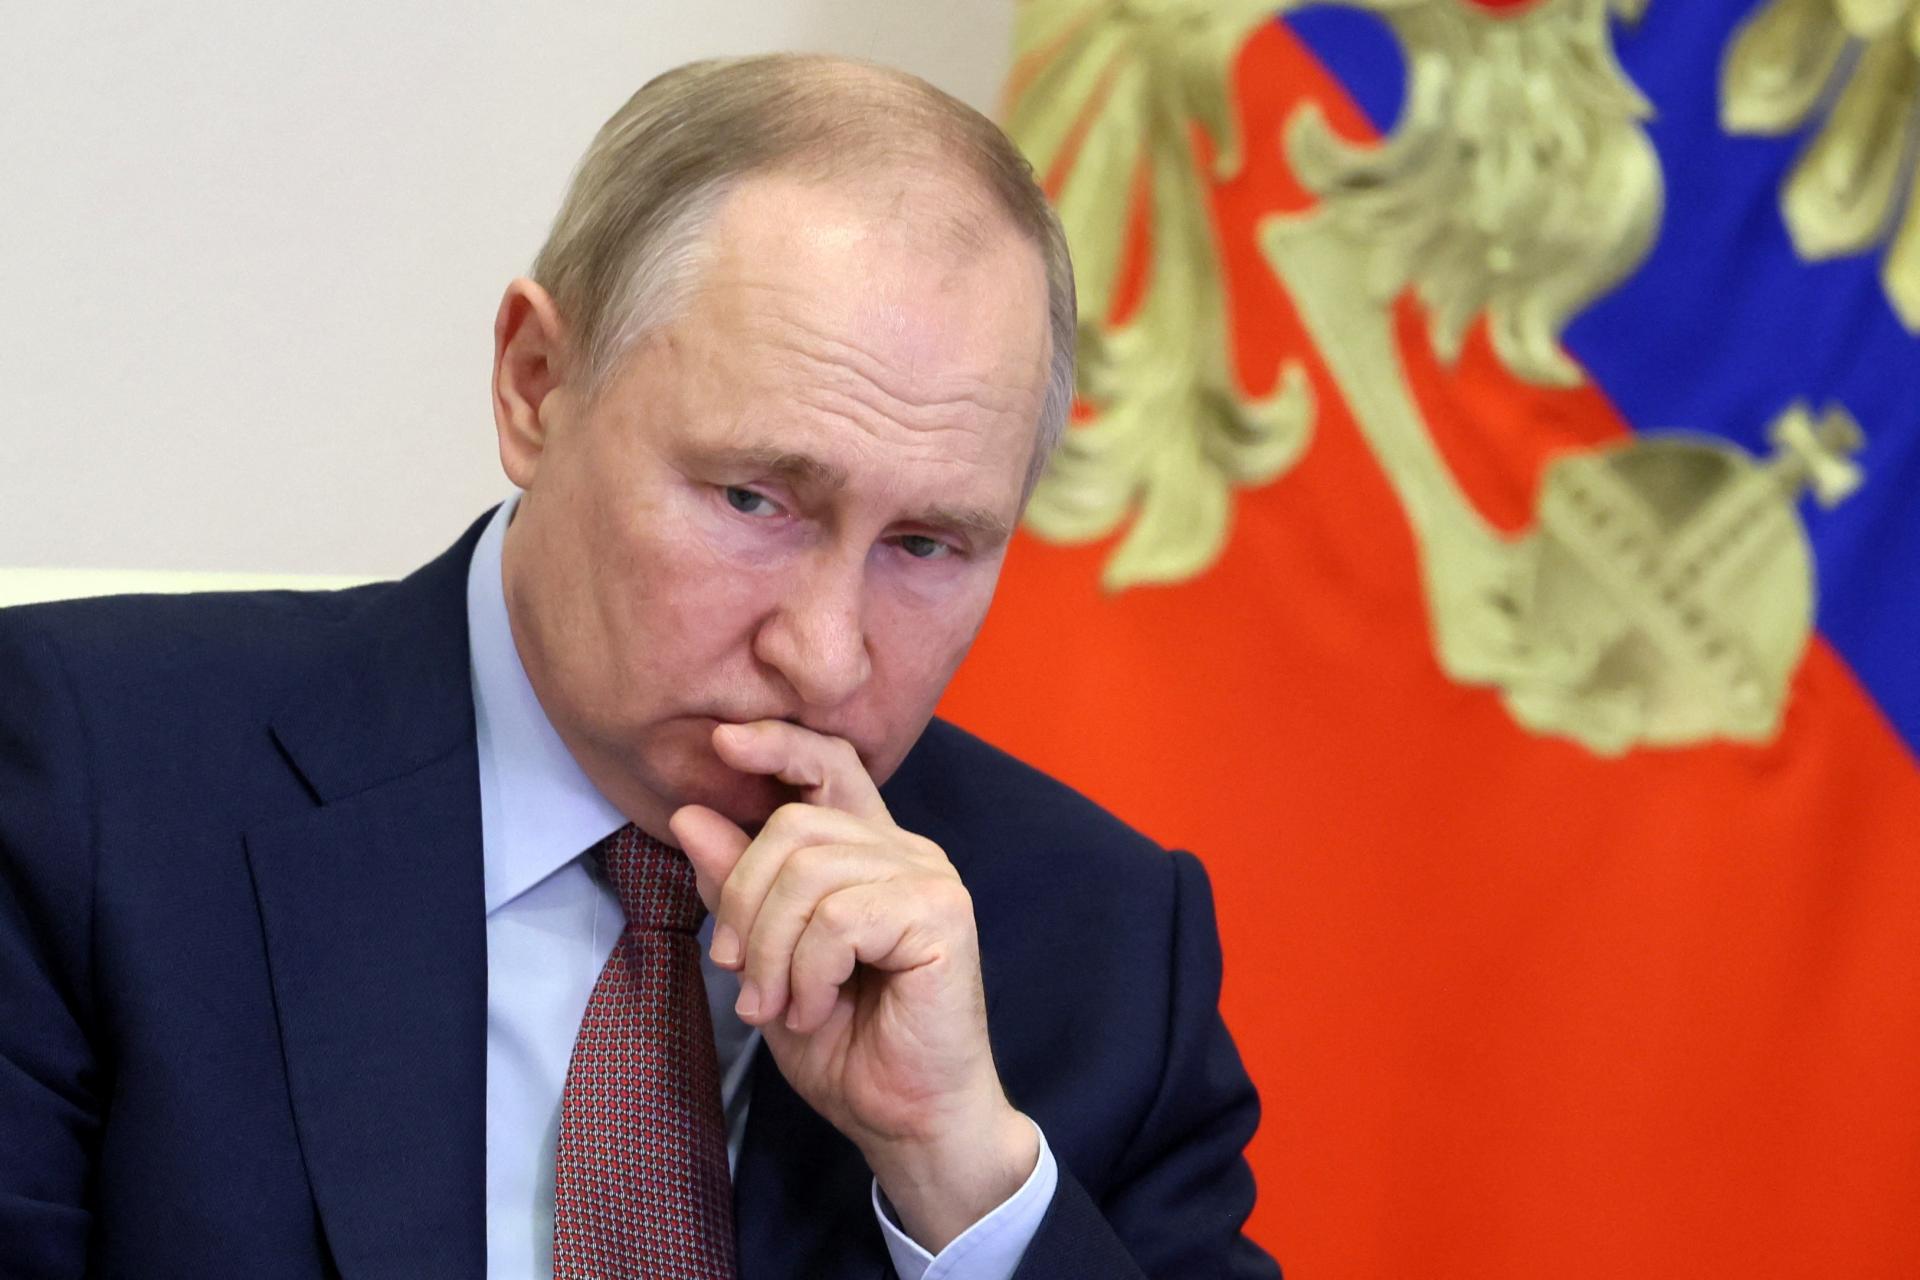 Putin sa stretol s vojenským vedením, aby rokoval o stratégii na Ukrajine